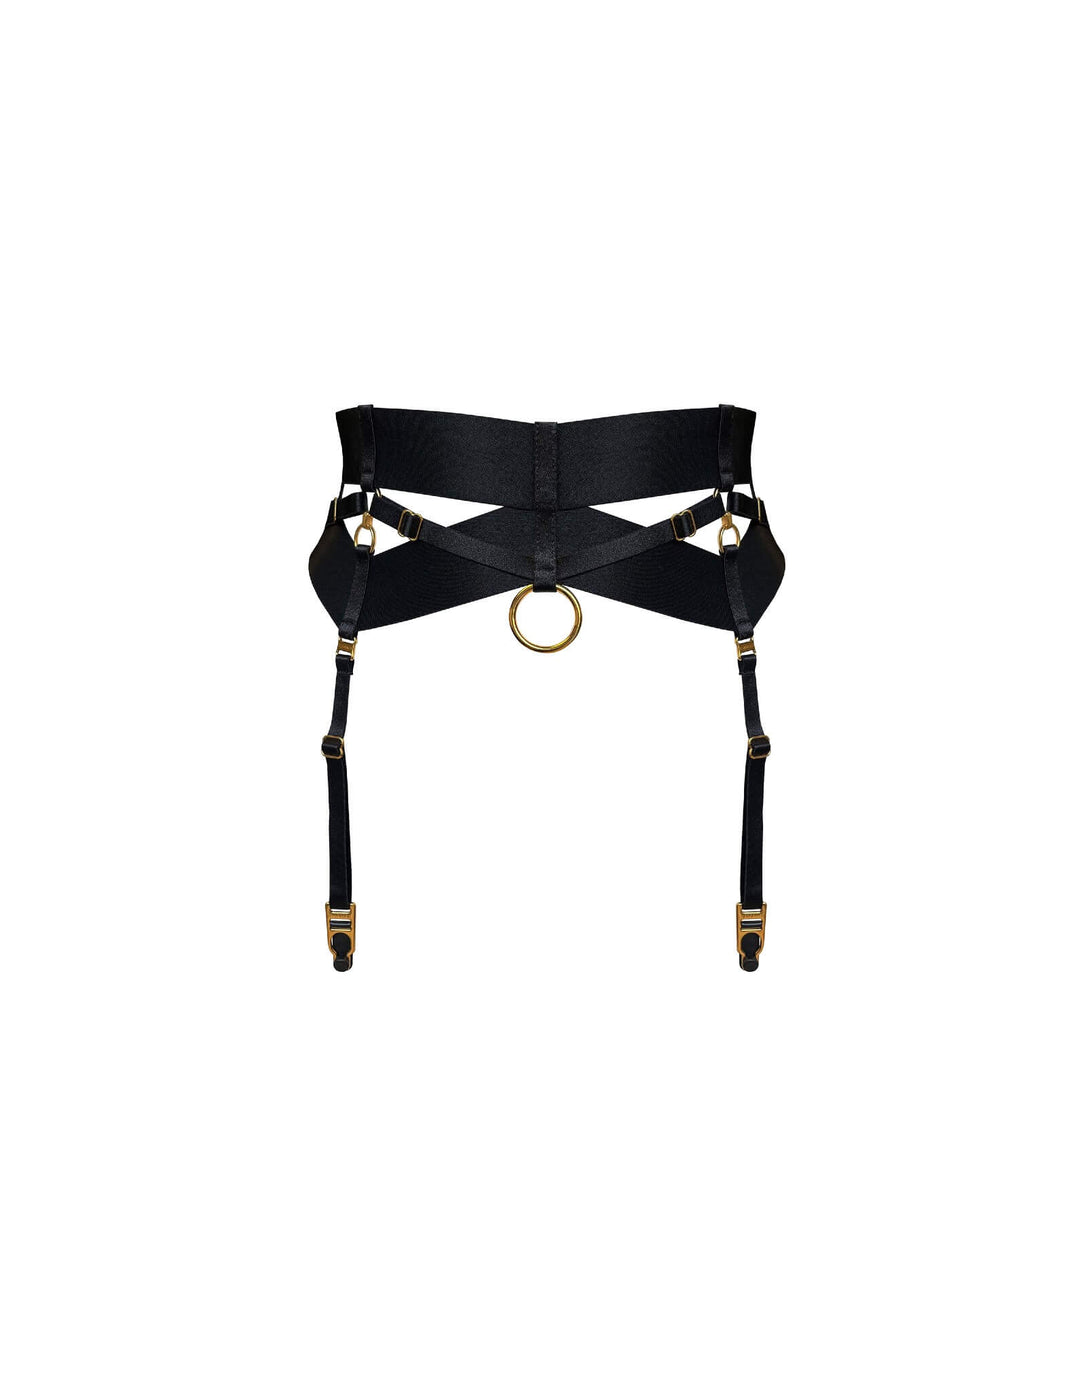 Bordelle Retta Suspender Black - Luxury Designer Lingerie Accessories